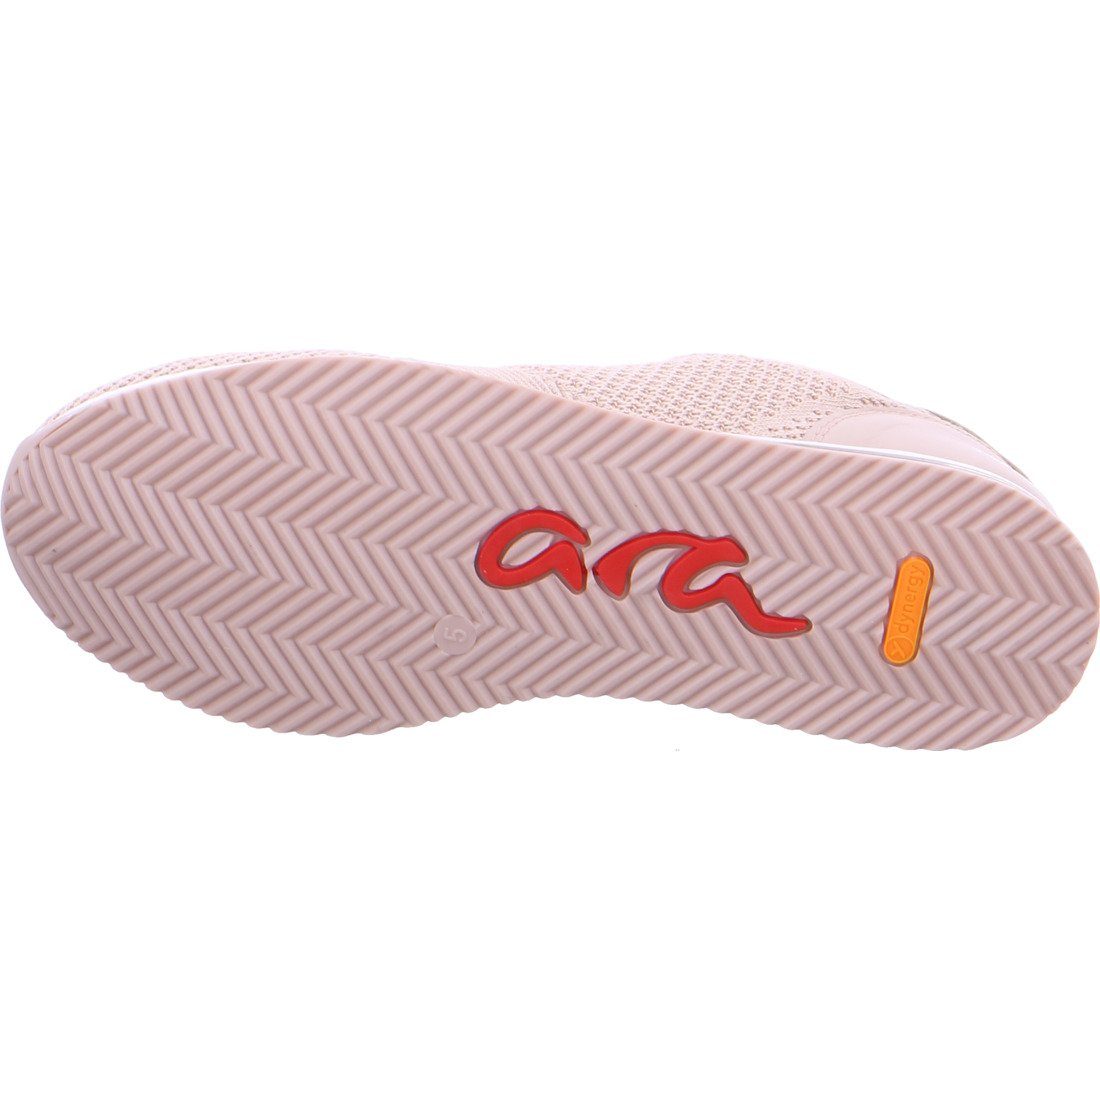 Schnürschuh grau Ara Ara Lissabon Schnürschuh - 042126 Schuhe, Textil Damen